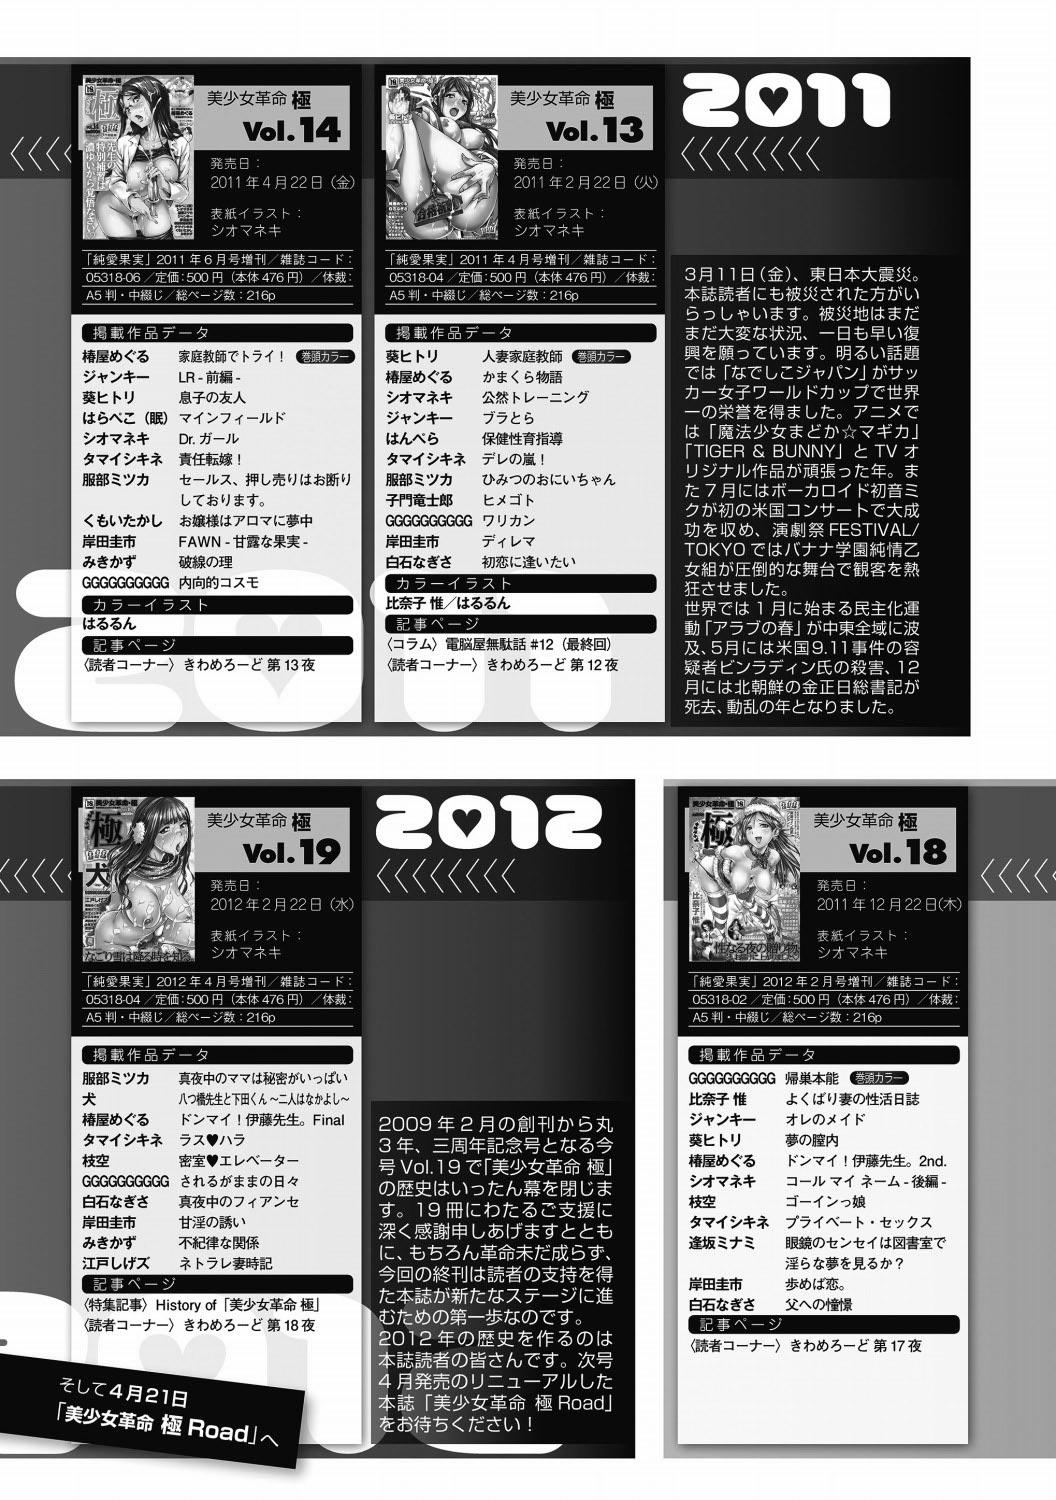 Bishoujo Kakumei KIWAME 2012-04 Vol.19 203